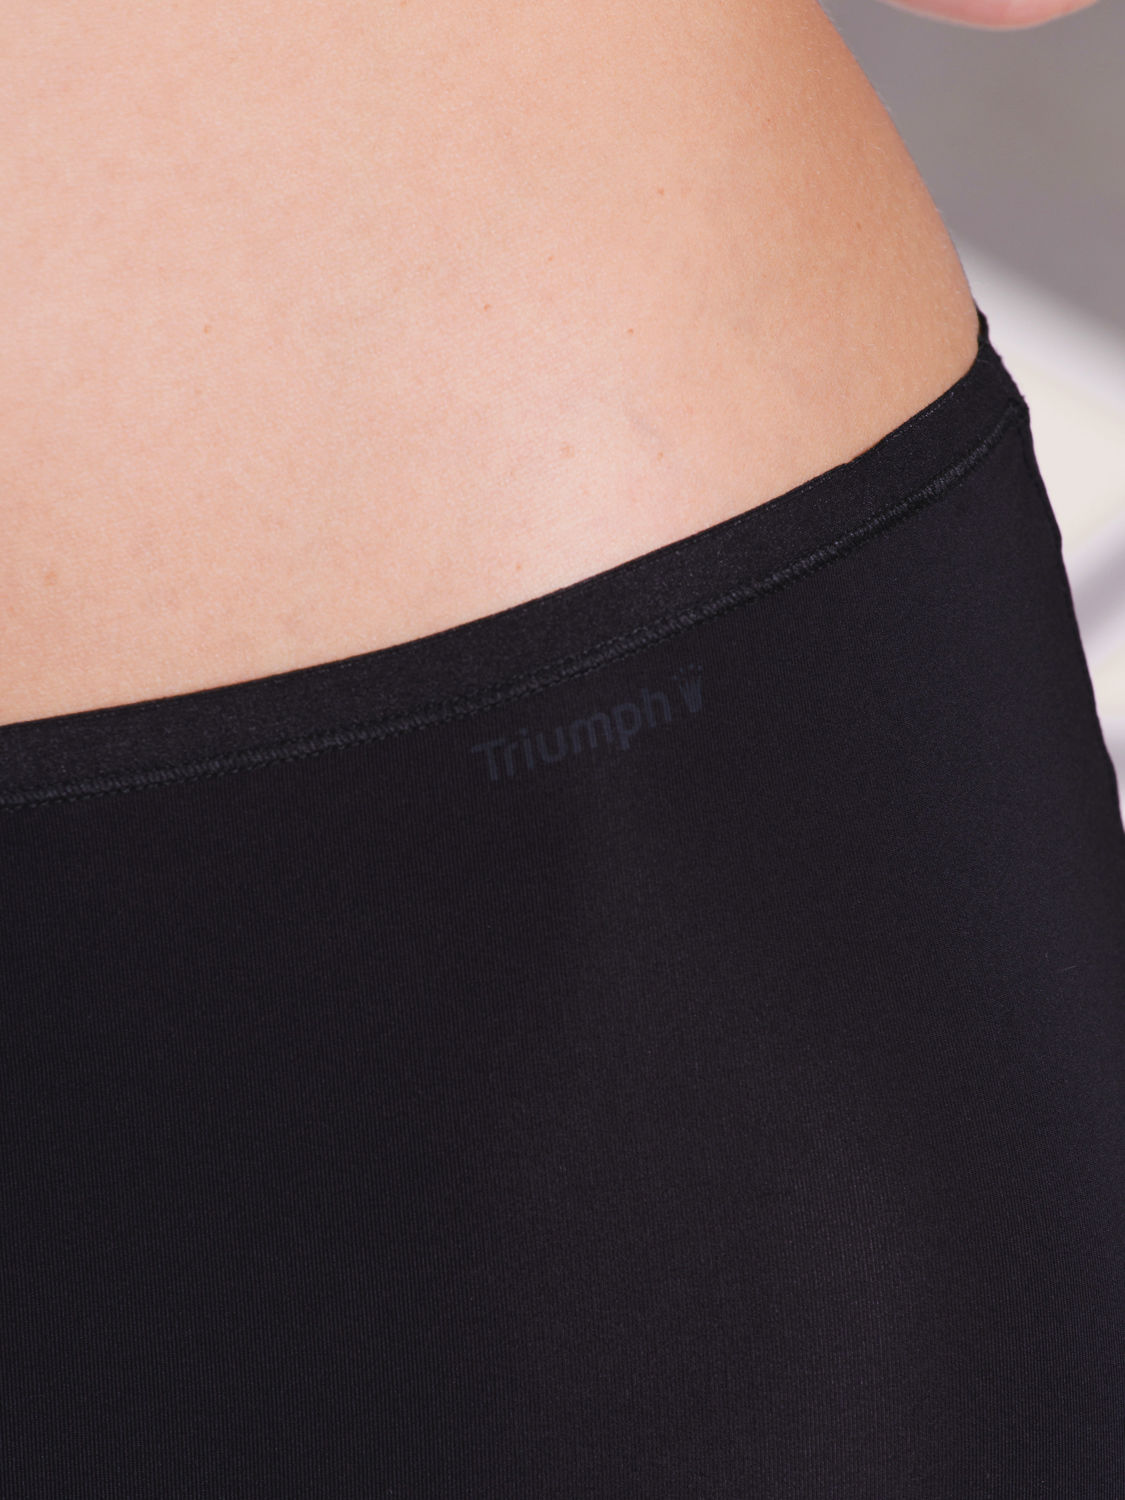 Triumph Body Make-Up Skirt 01 Unterrock Farbe Schwarz